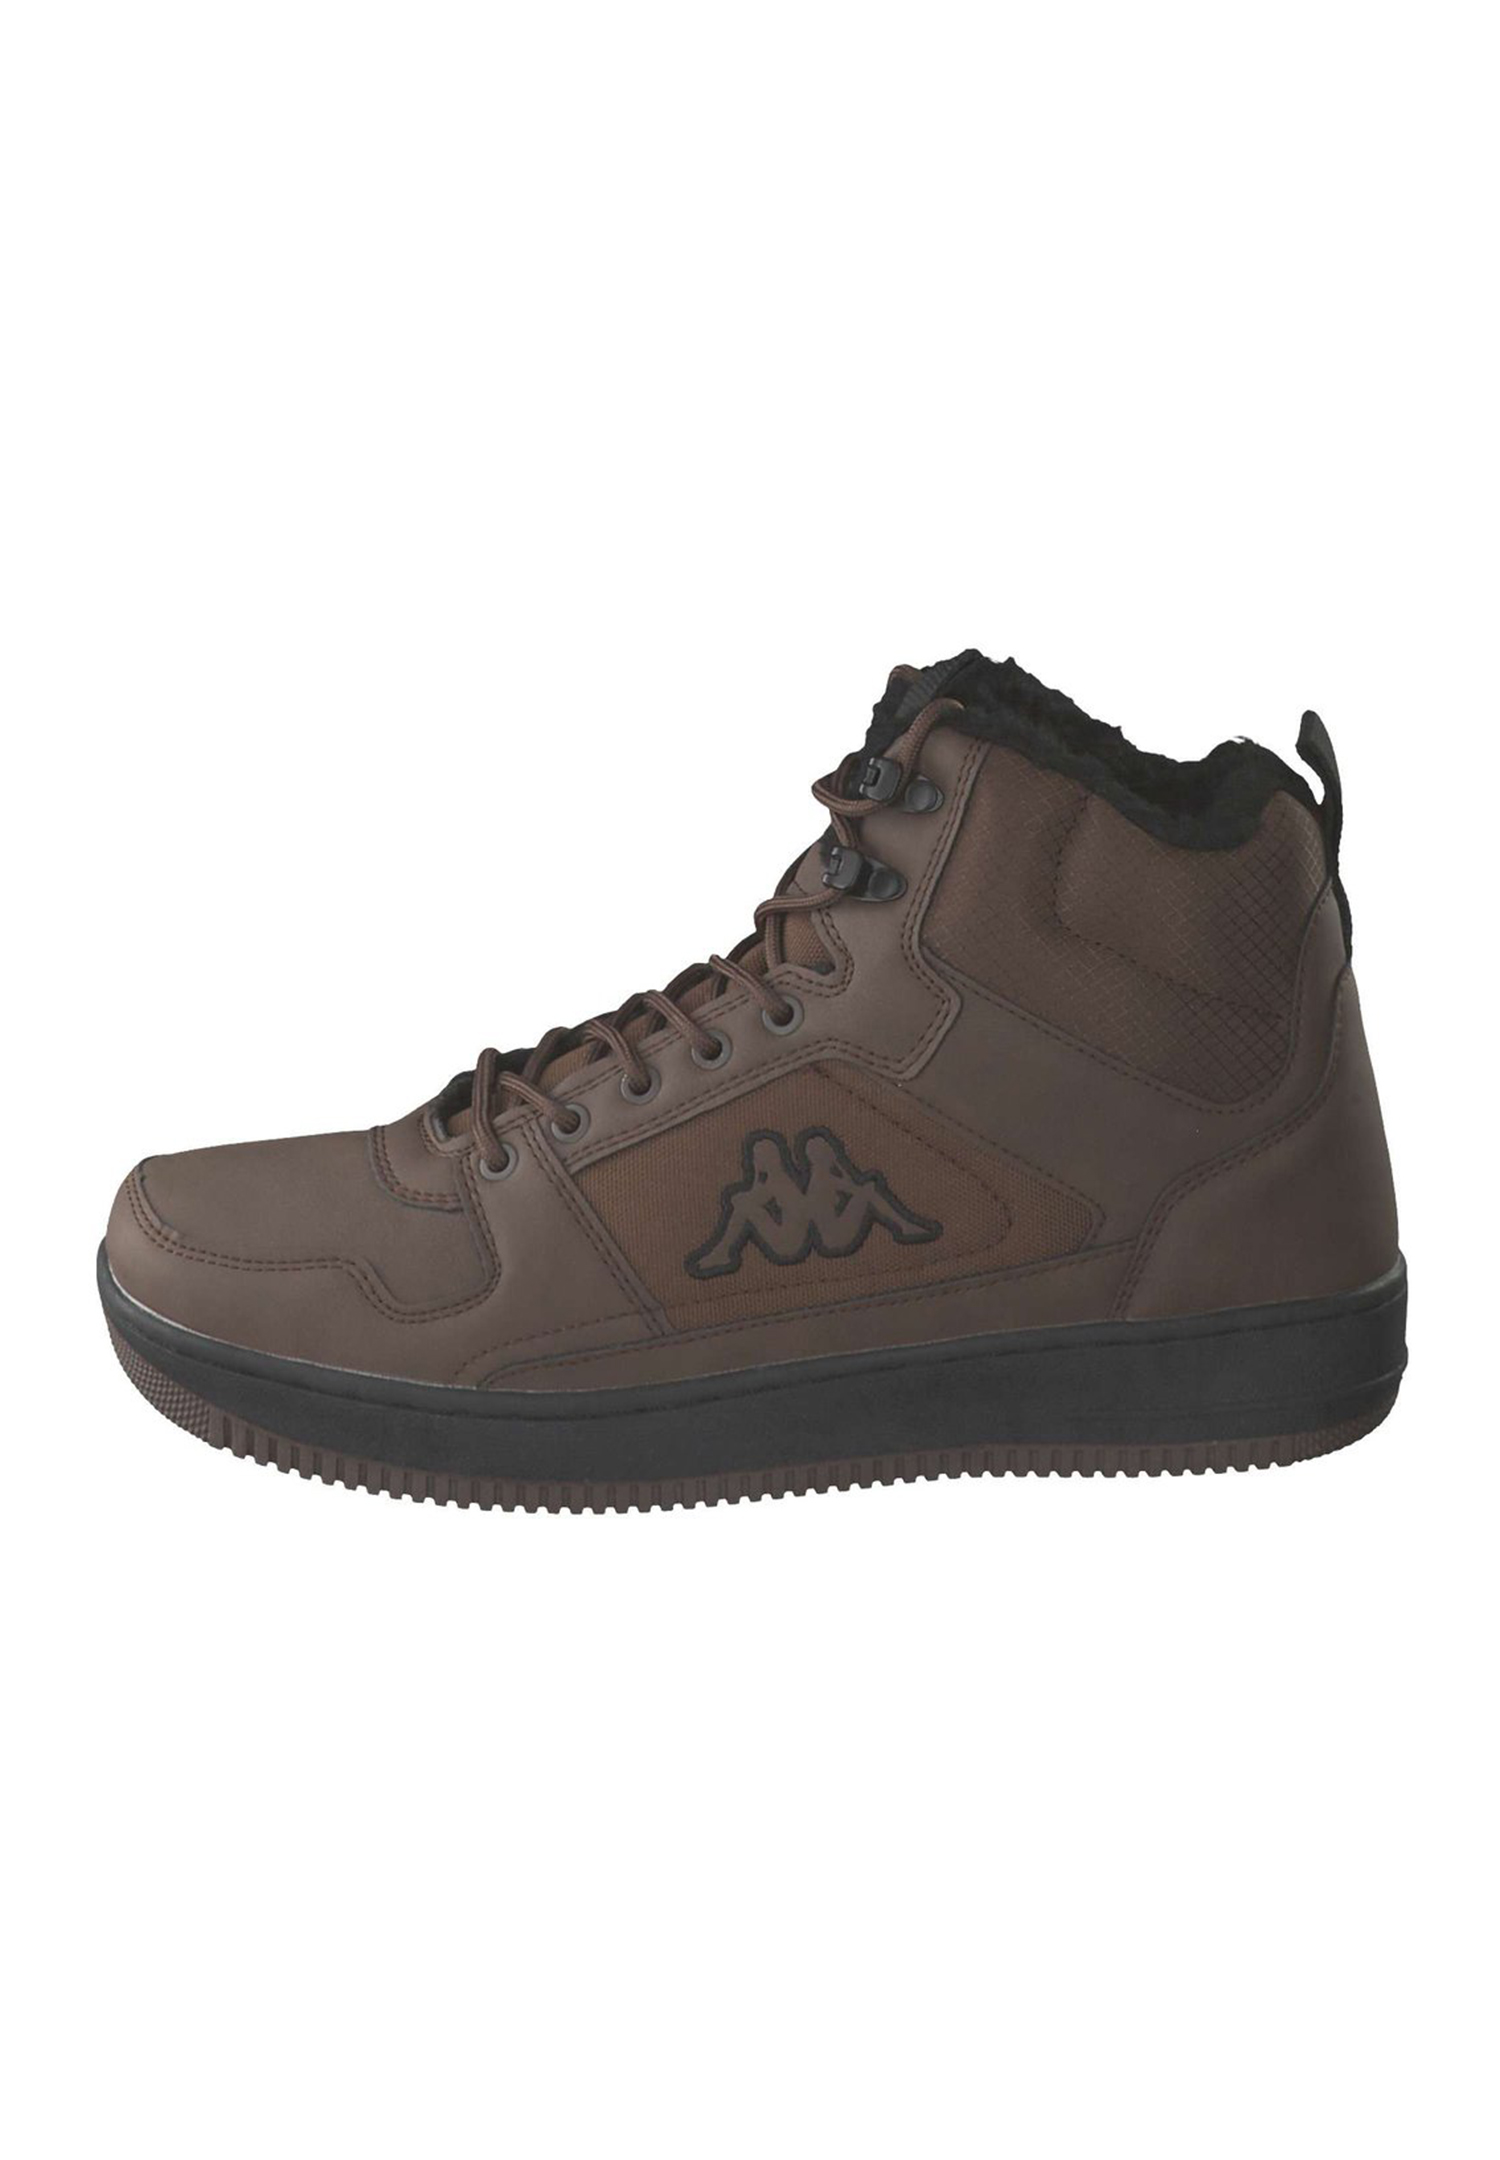 Kappa Herren Sneaker Schuhe High Top gefüttert Stylecode 243046FUR 5011 braun  